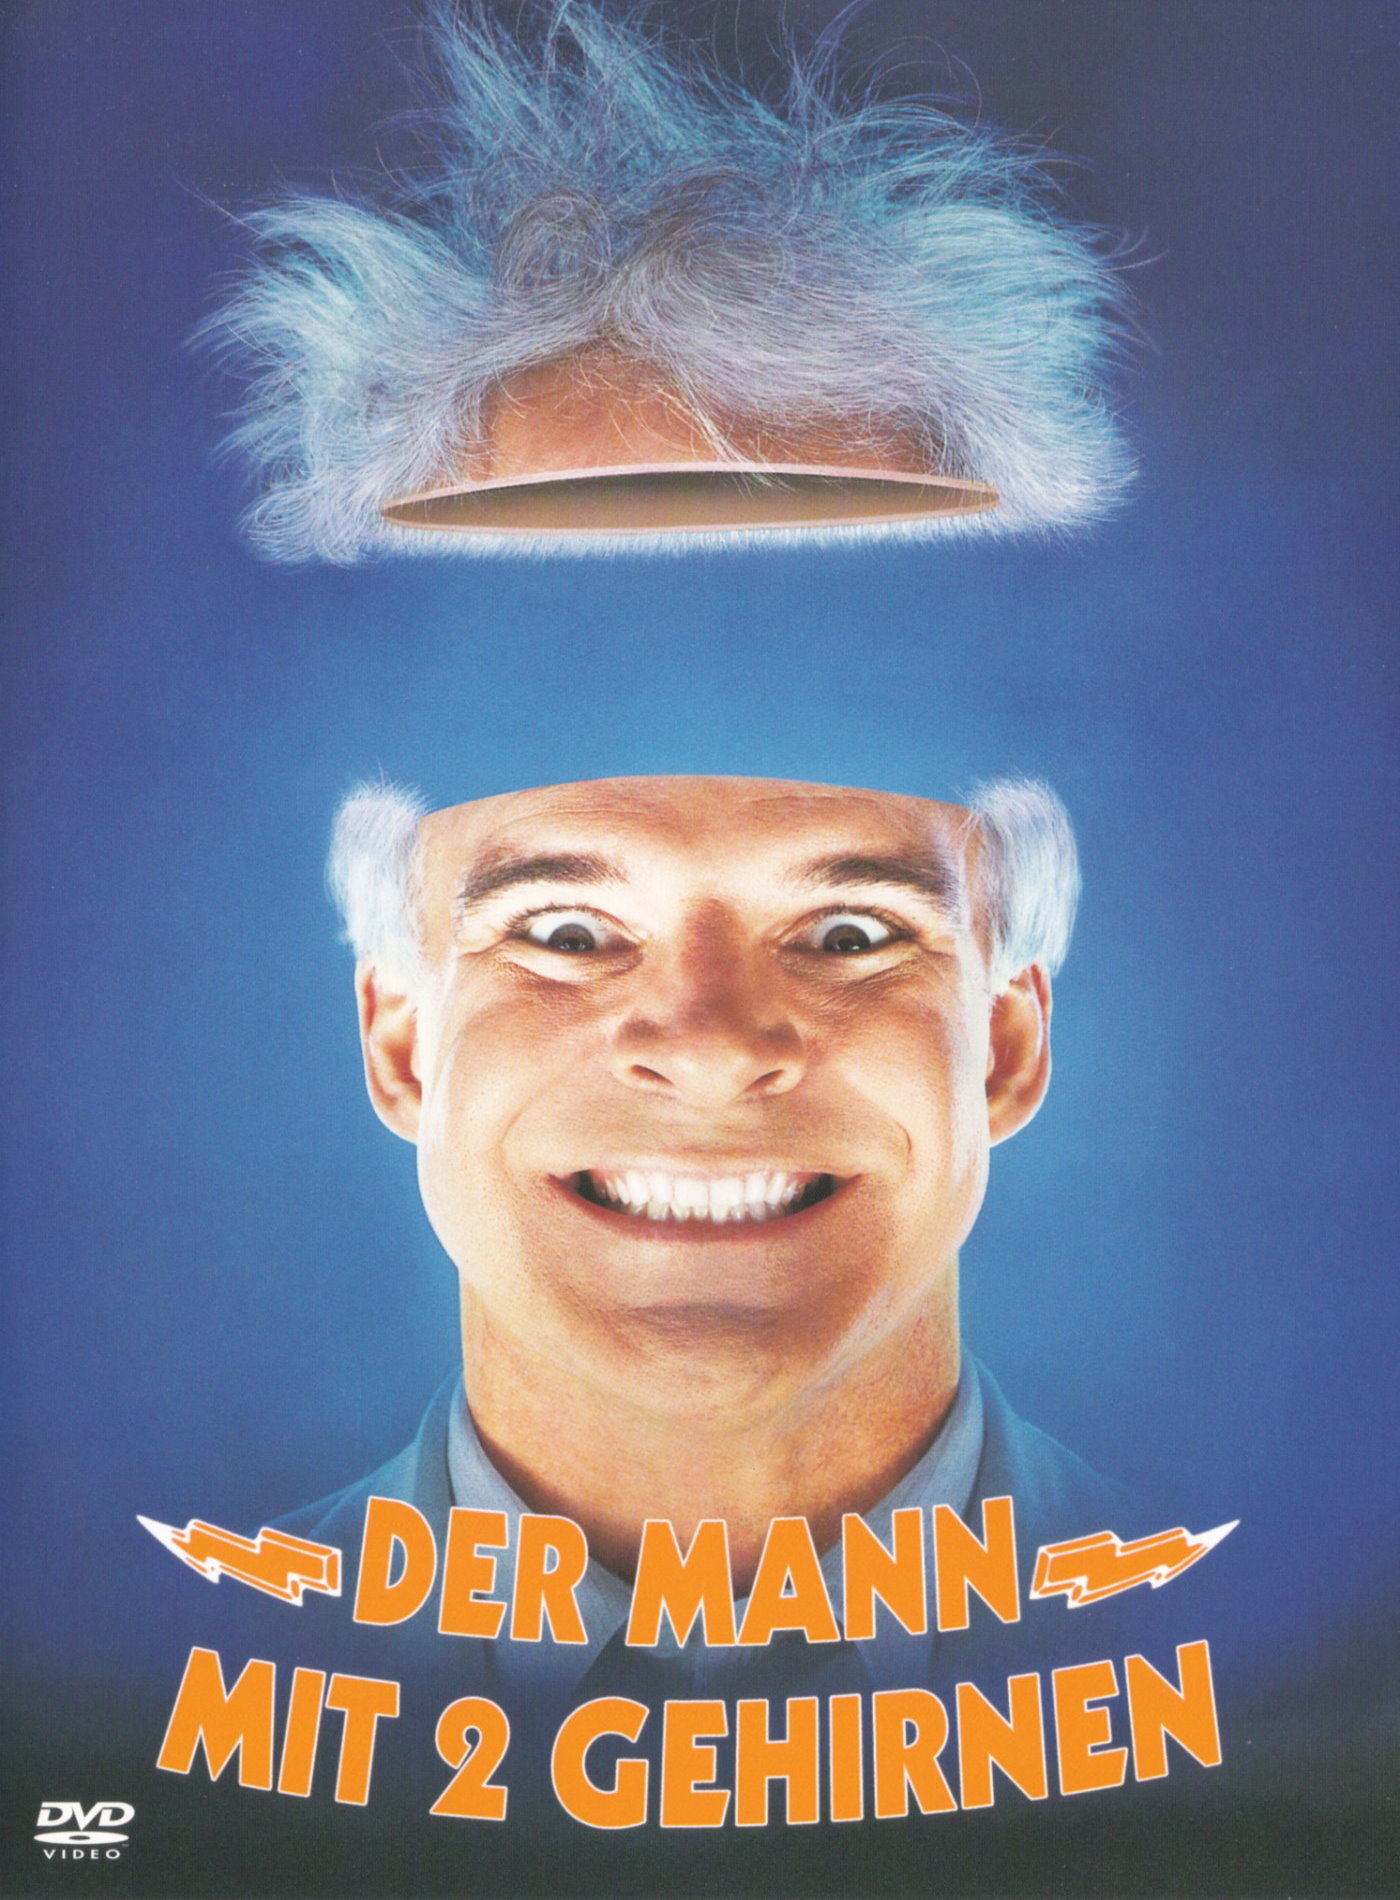 Cover - Der Mann mit zwei Gehirnen.jpg